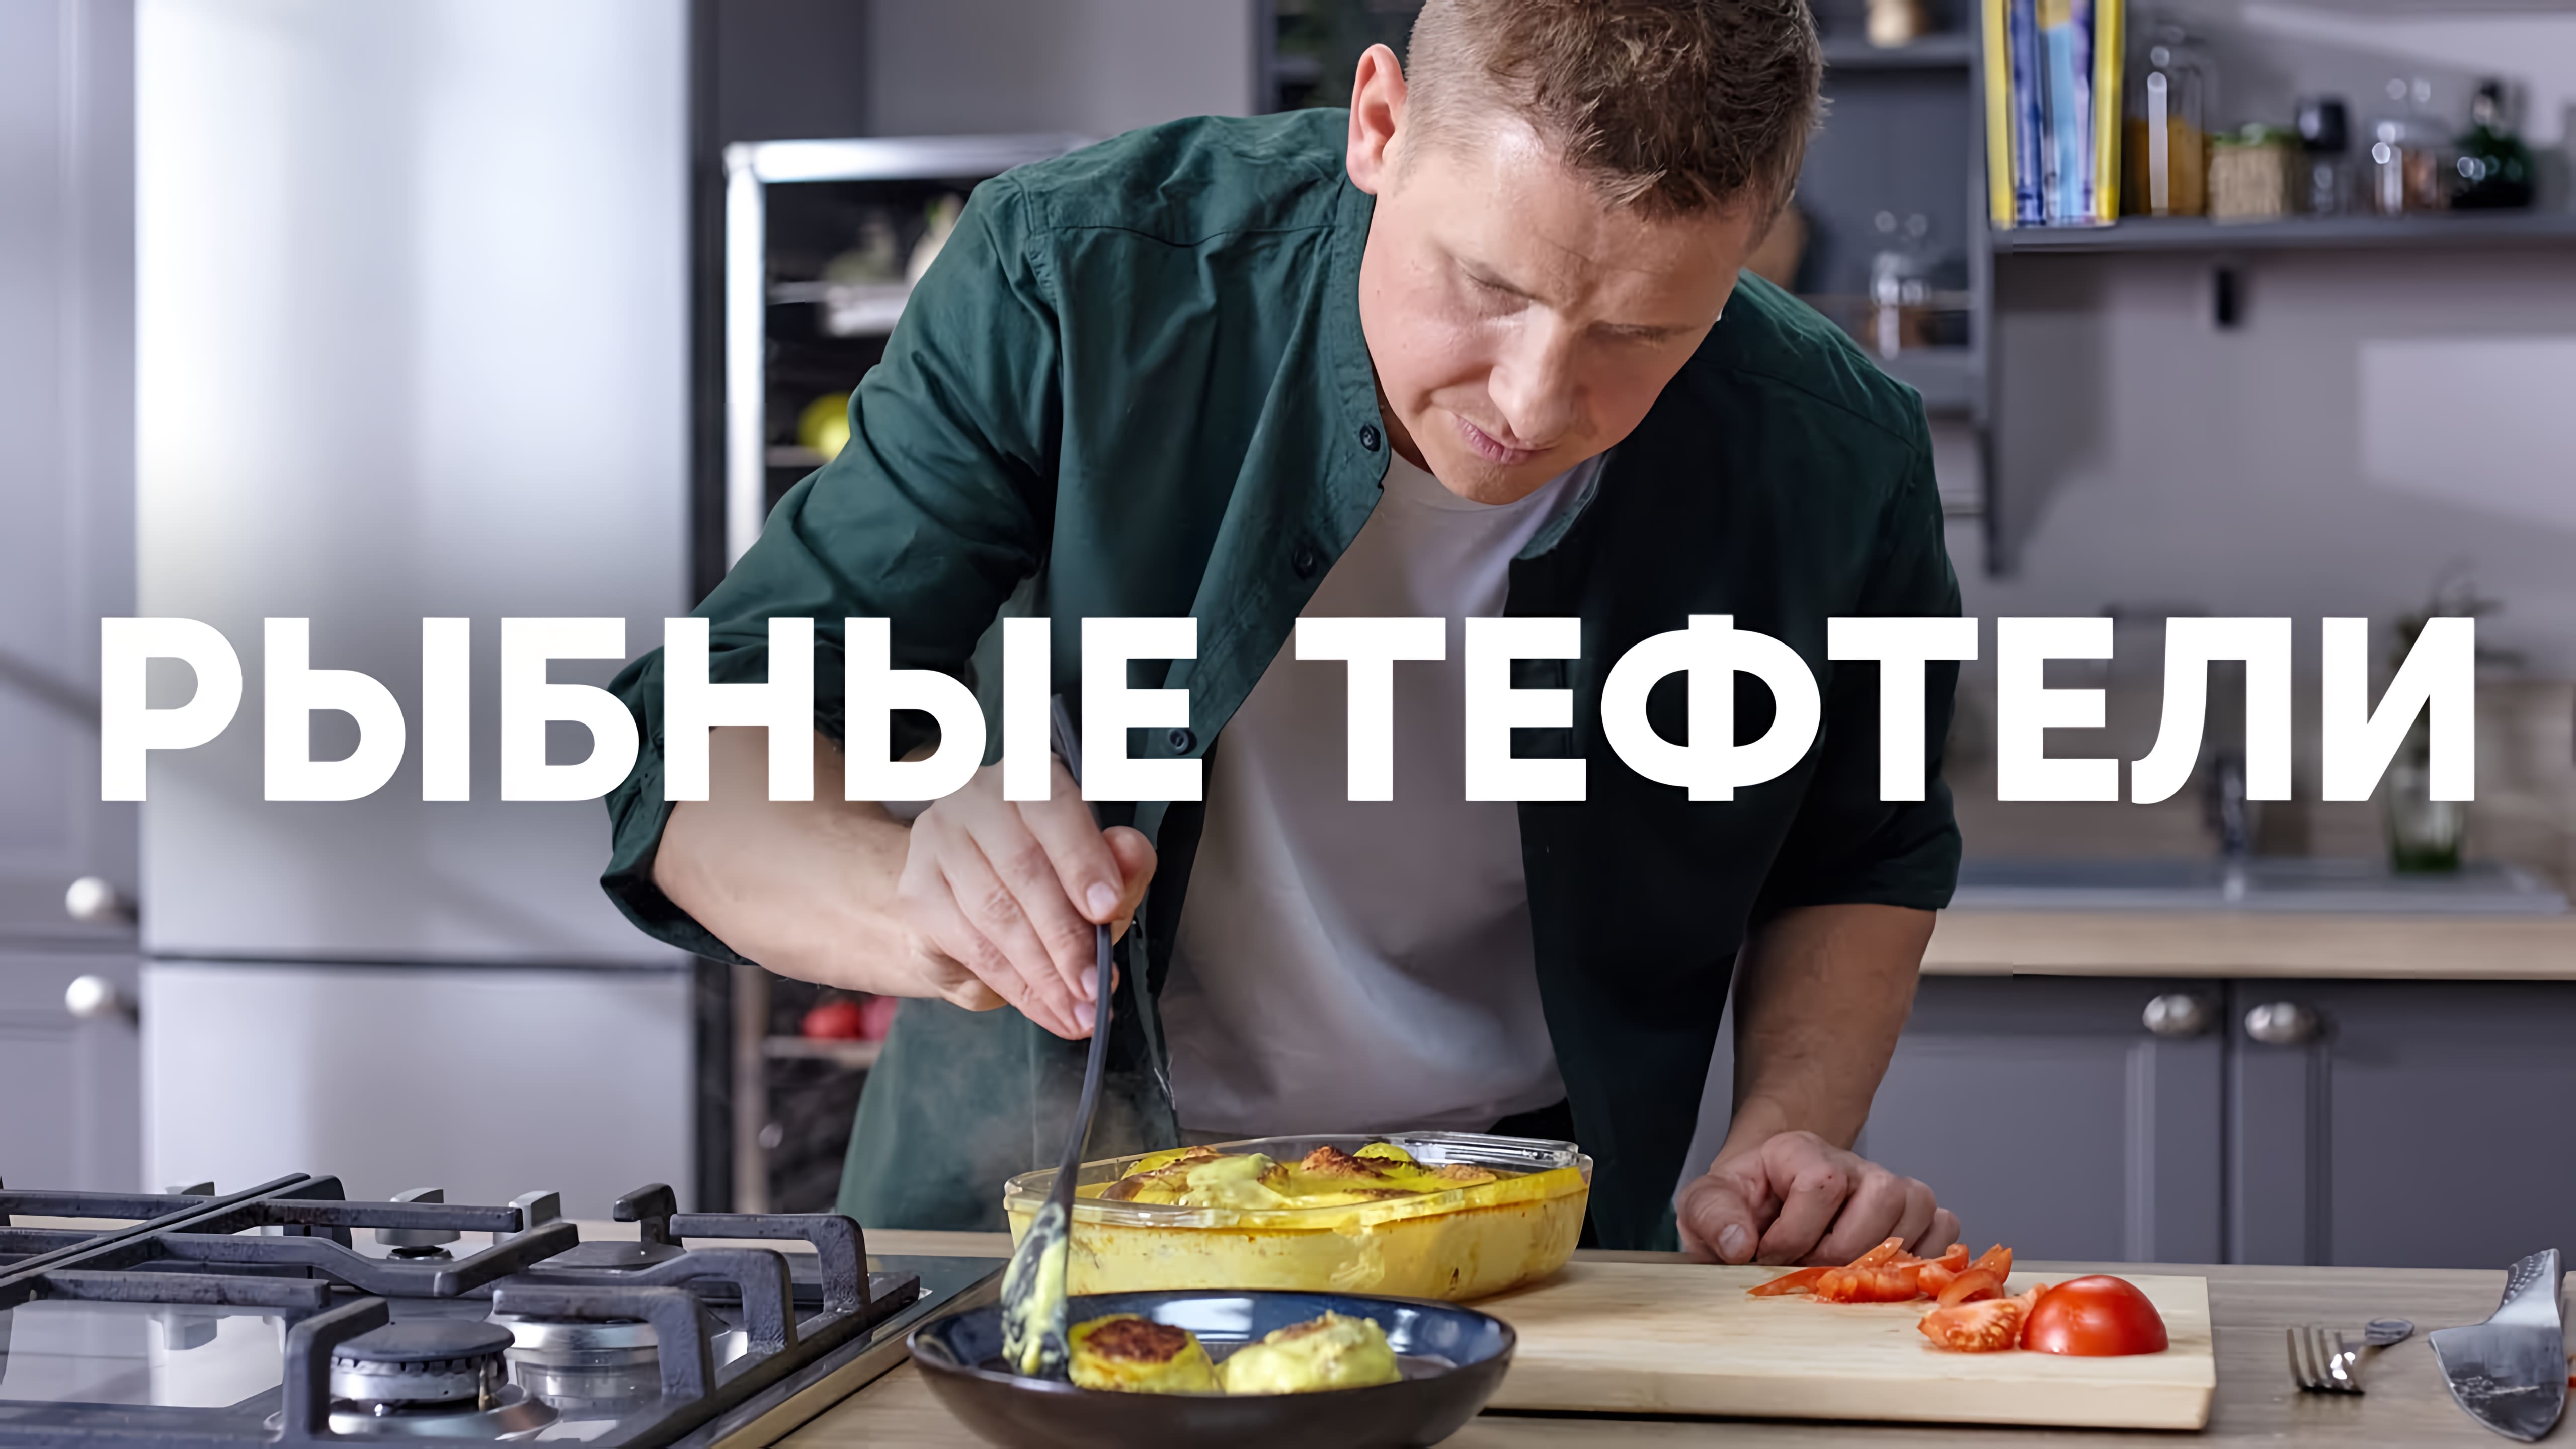 Видео: ЛУЧШИЕ рыбные ТЕФТЕЛИ — рецепт от шефа Бельковича | ПроСто кухня |